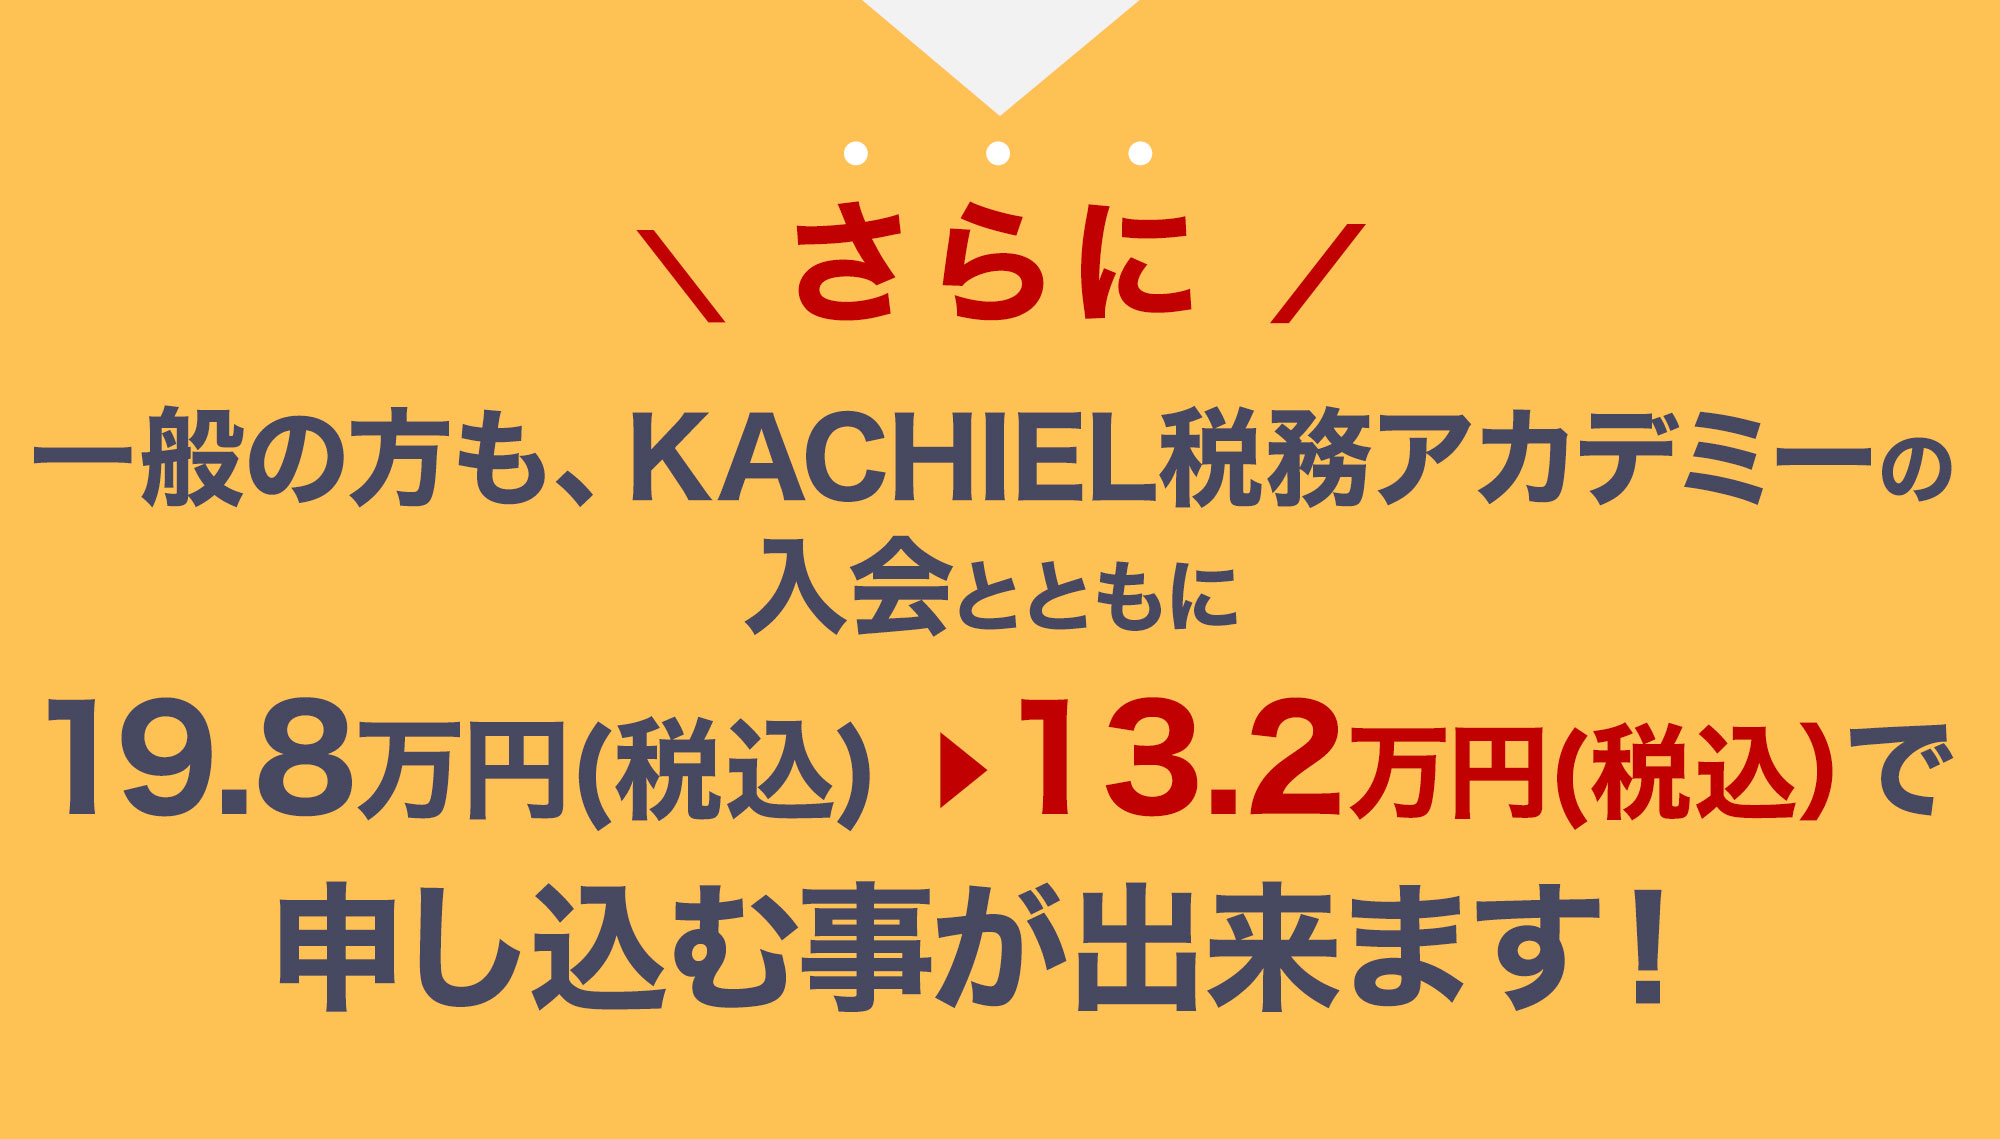 さらに一般の方も、KACHIEL税務アカデミーの入会とともに15.4万円（税別）から8.8万円（税別）で申し込む事が出来ます！